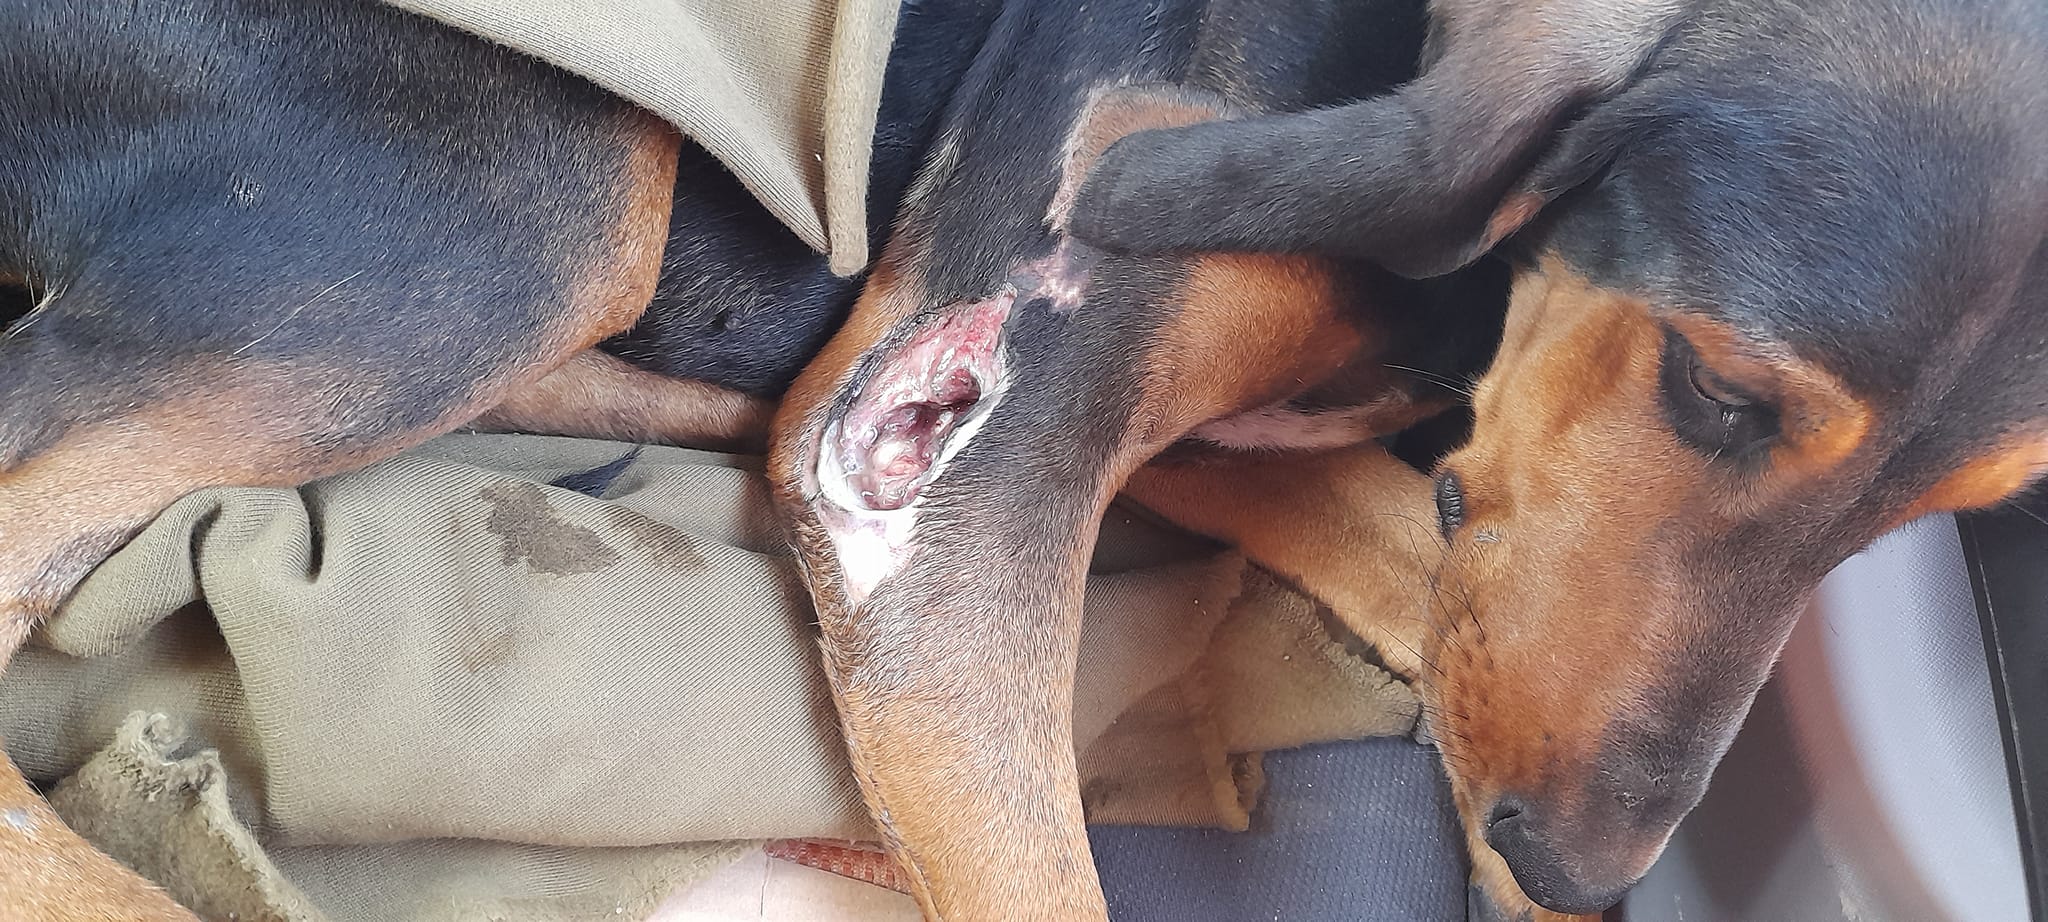 Καταλυτική παρέμβαση Ζαβέρκου σε τραυματισμένο κυνηγόσκυλο